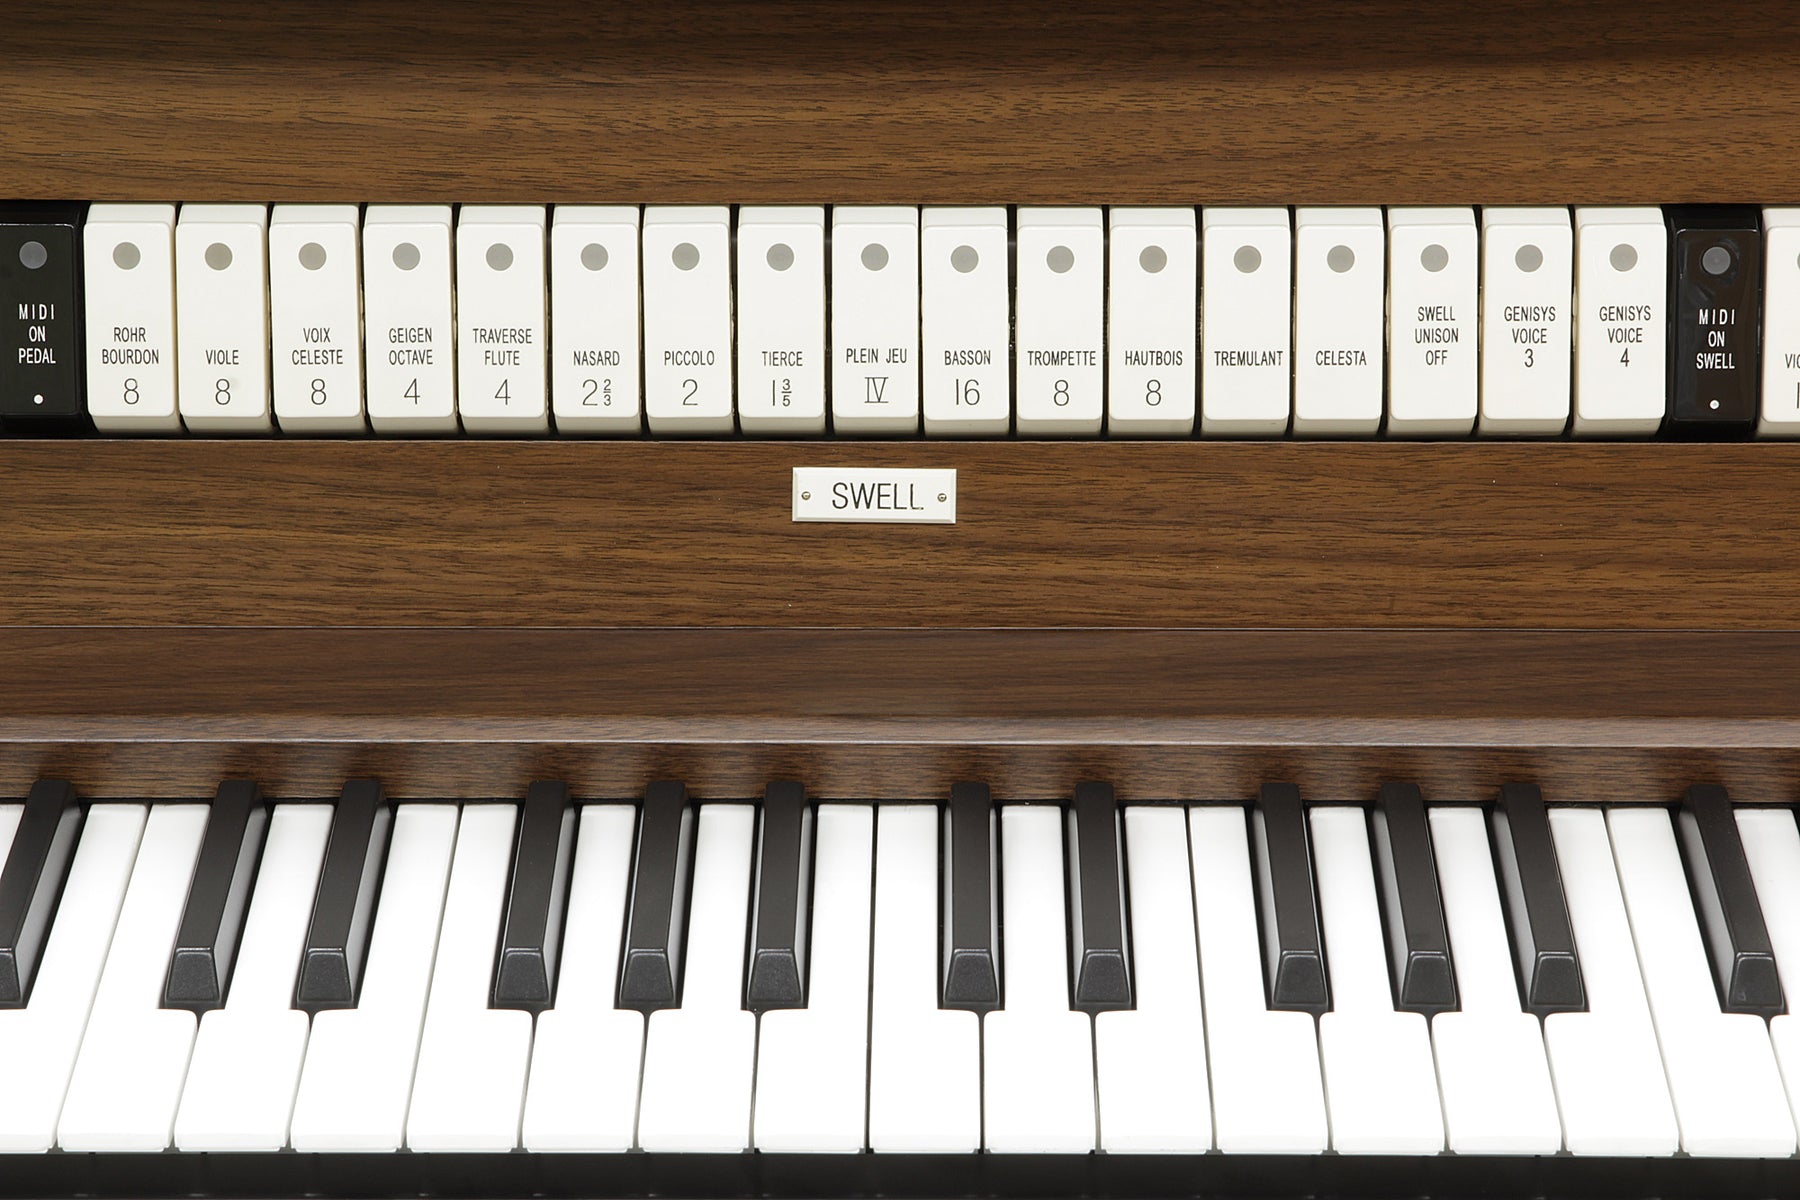 Allen-Orgel GX-215